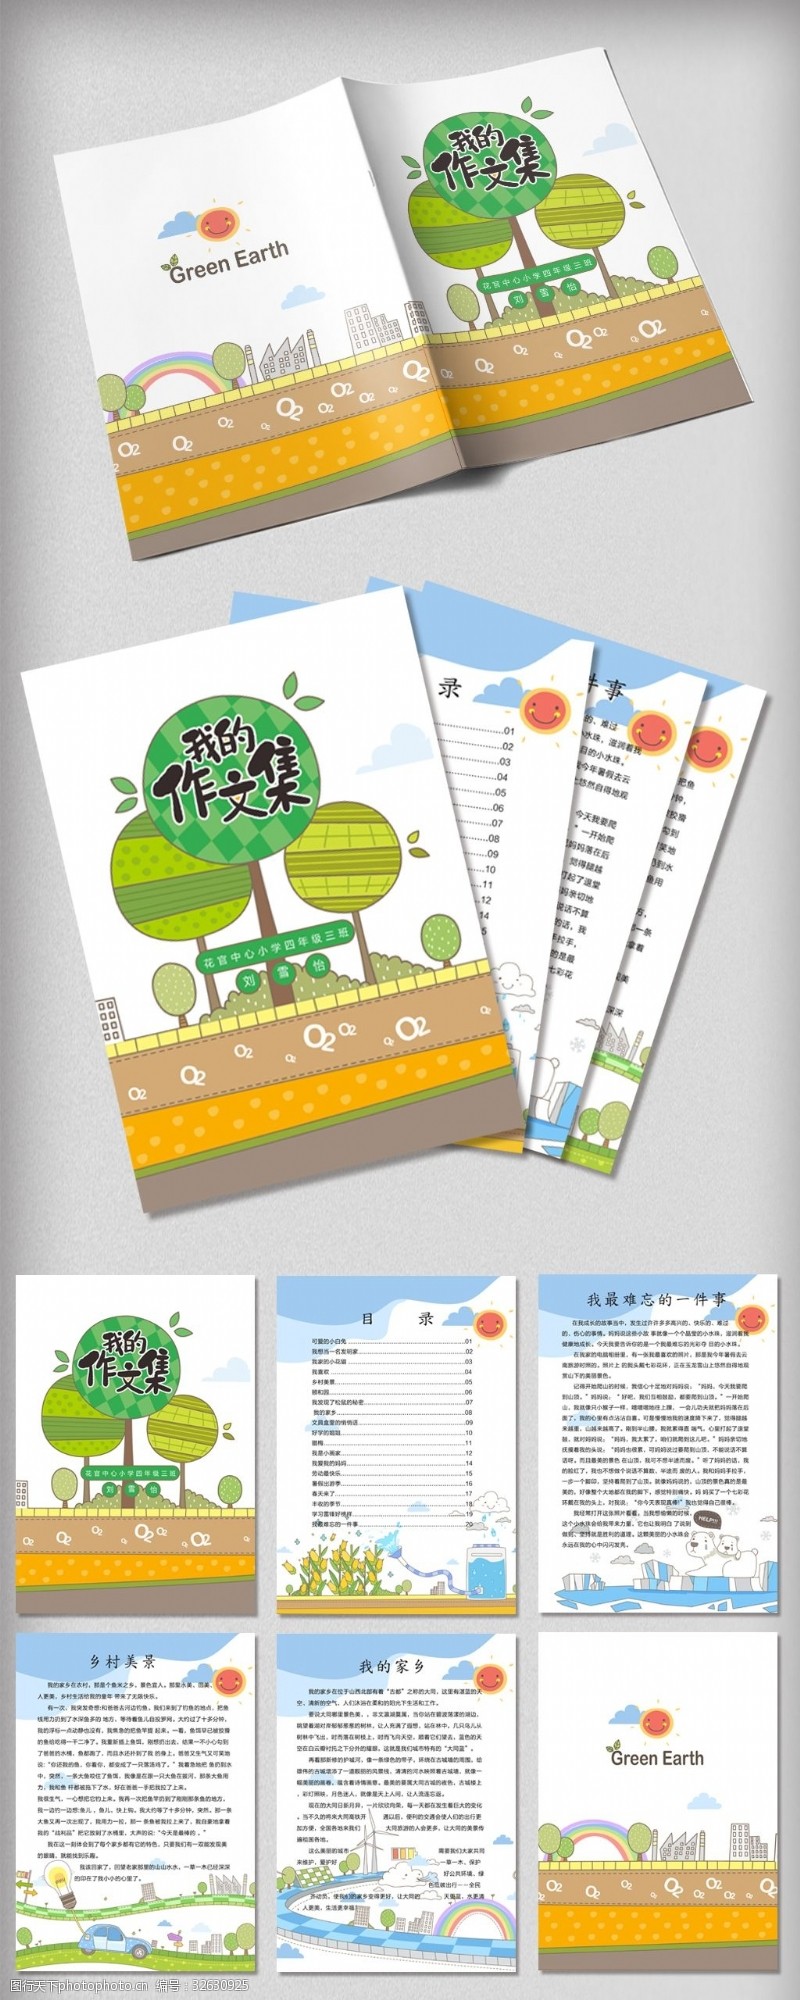 目录模版卡通共建绿色地球中小学生作文集免费模版